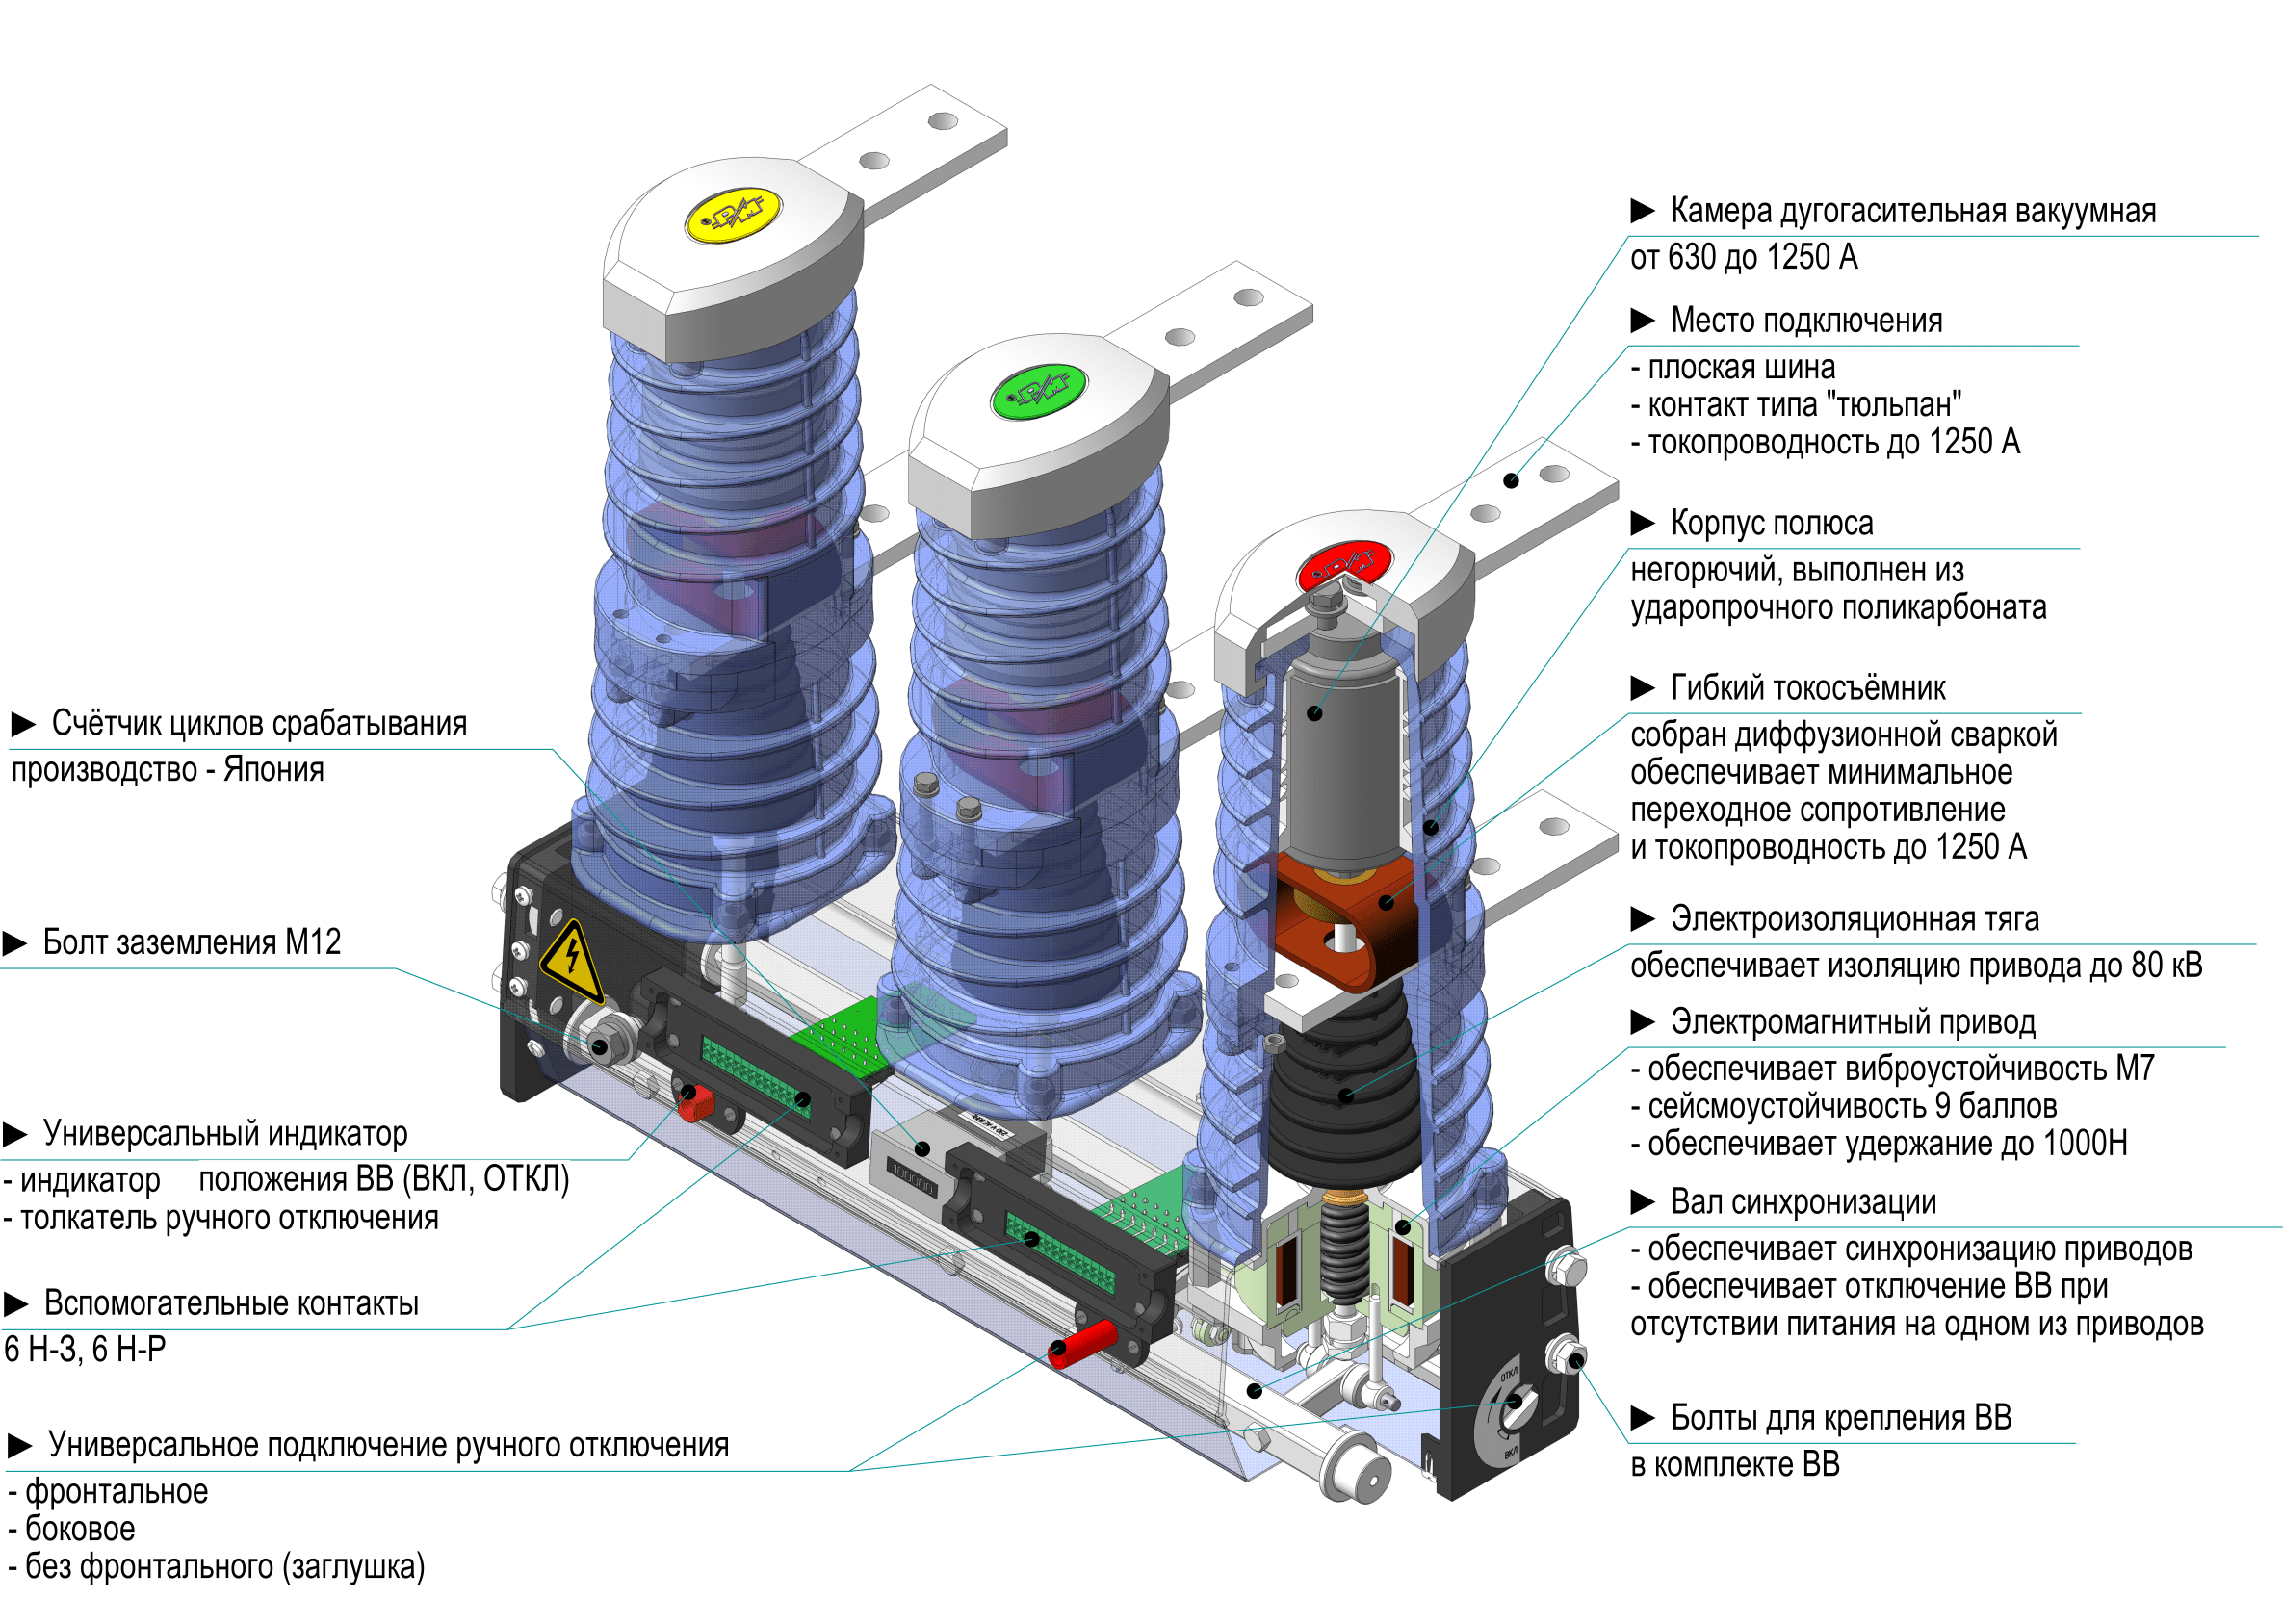 Инструкции / инструкции по эксплуатации оборудования подстанций